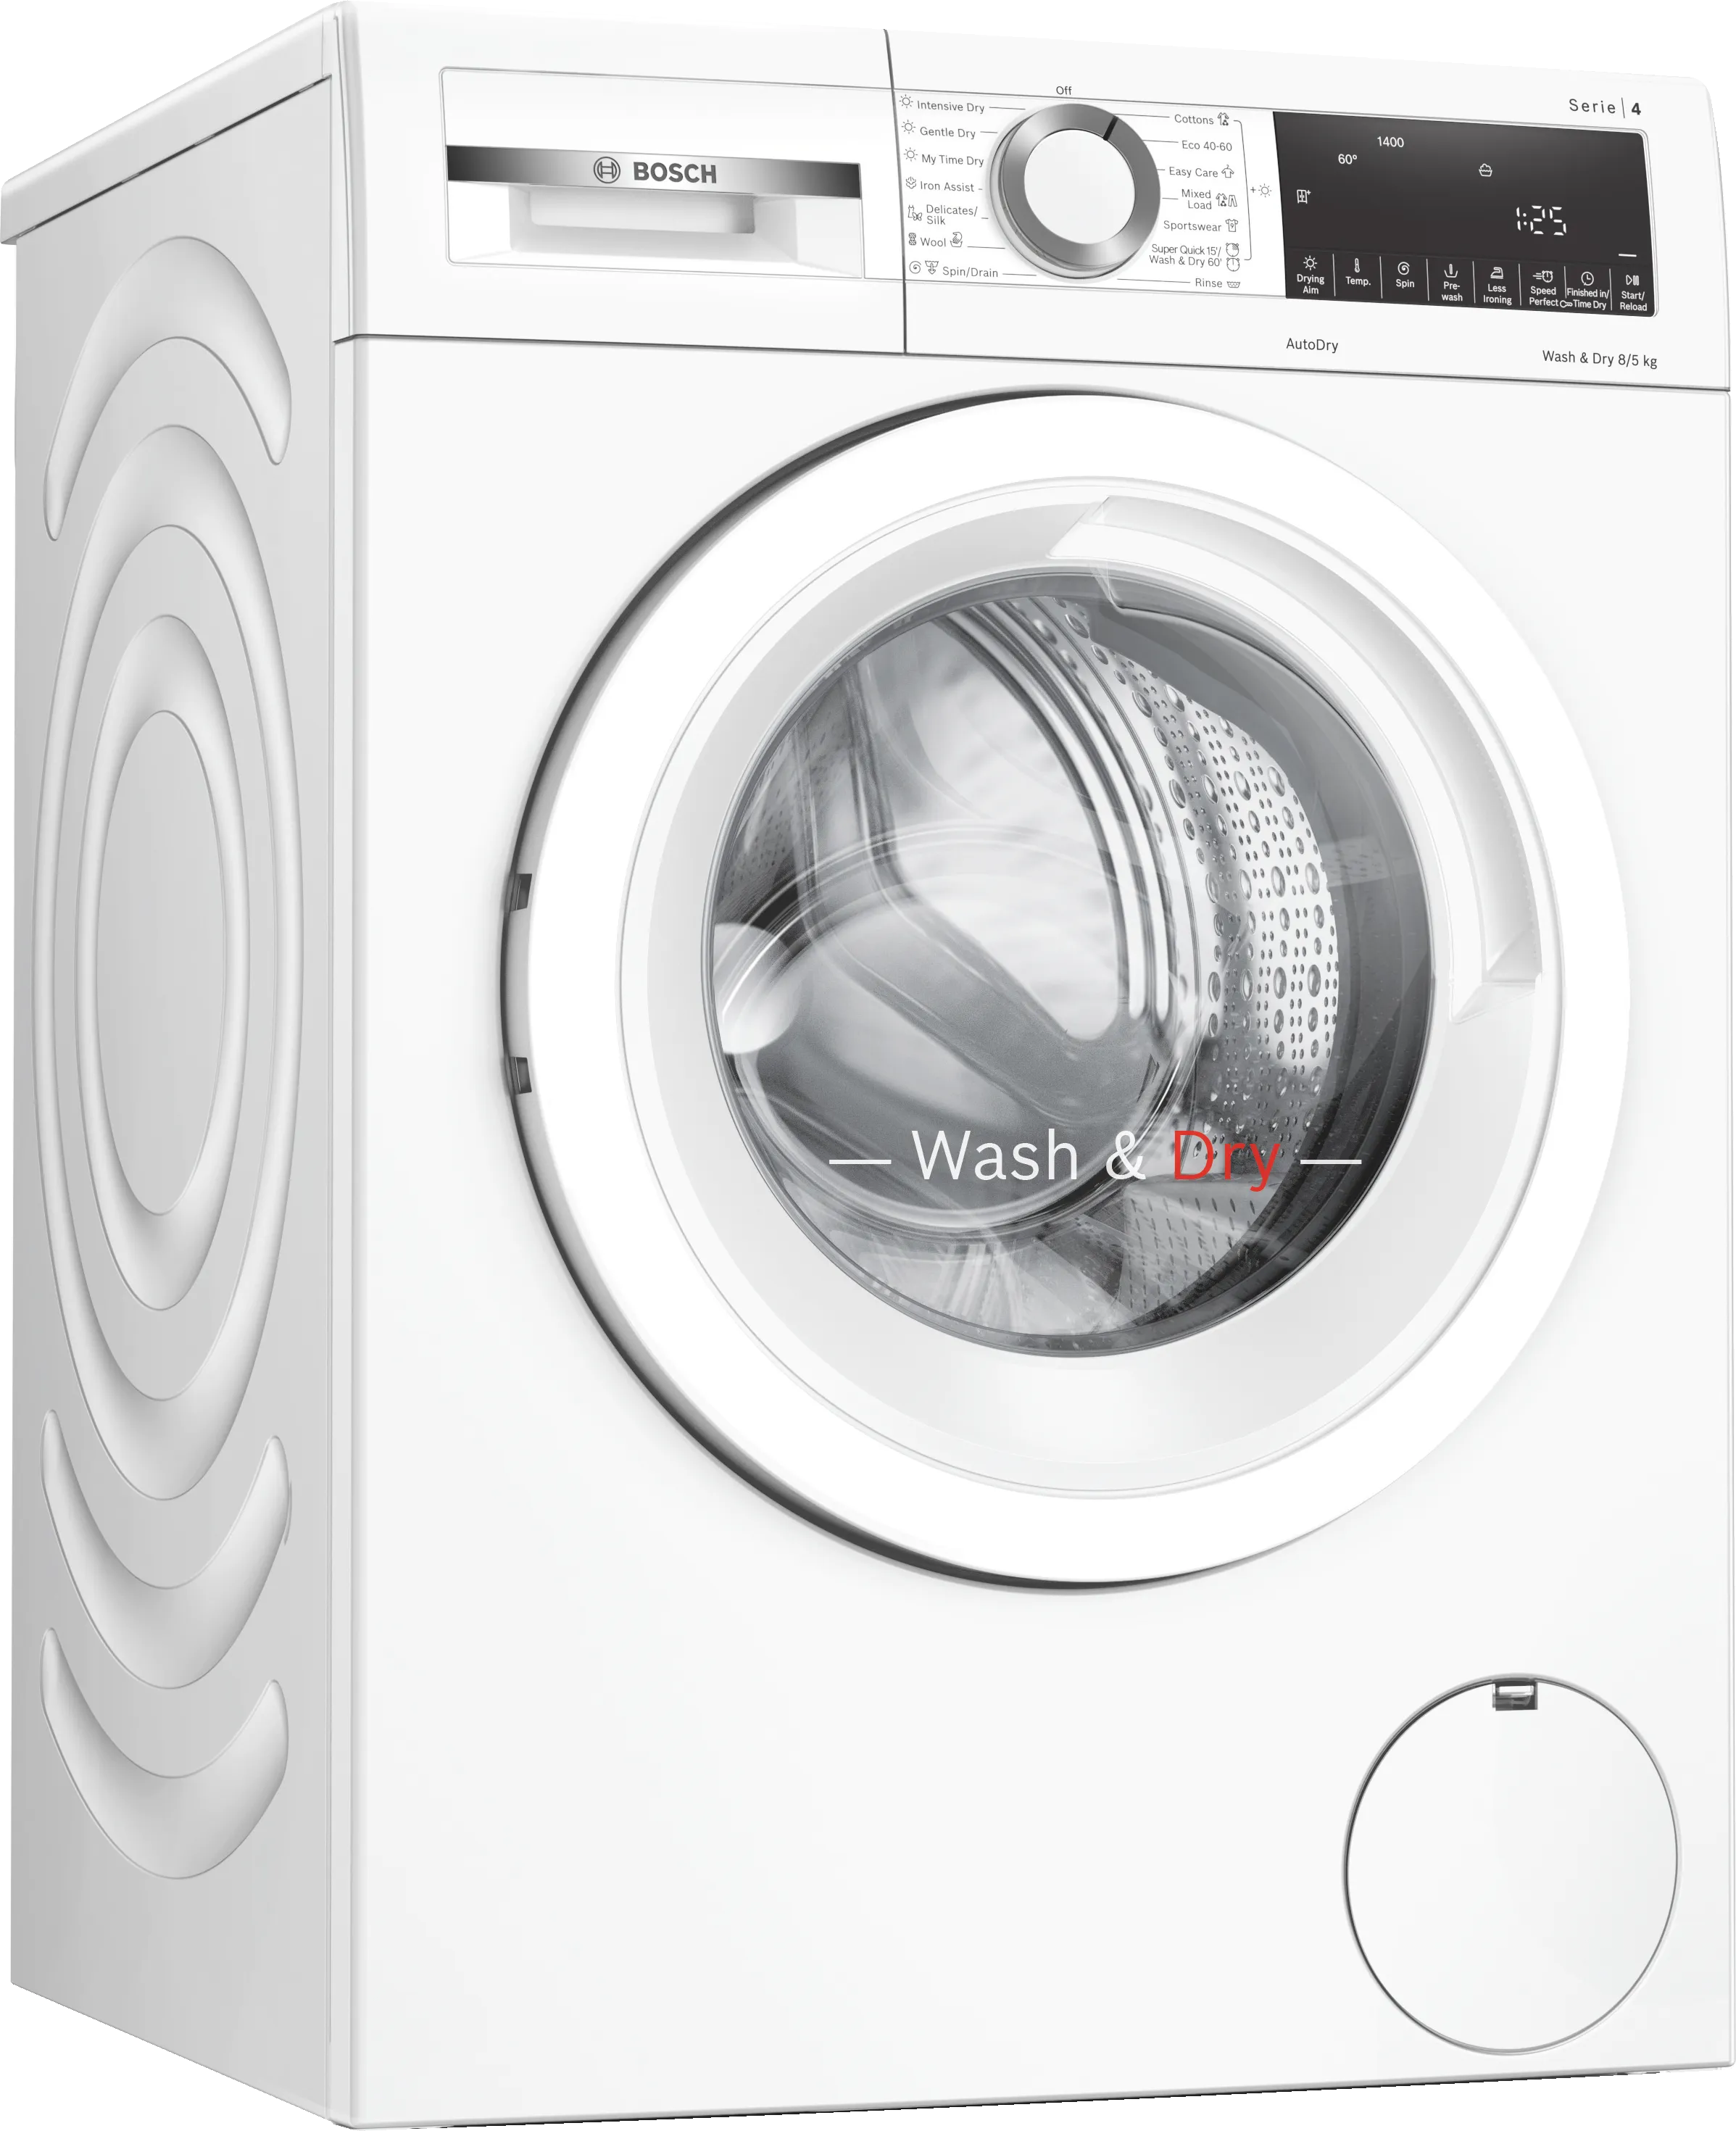 Series 4 Washer dryer 8/5 kg 1400 rpm 